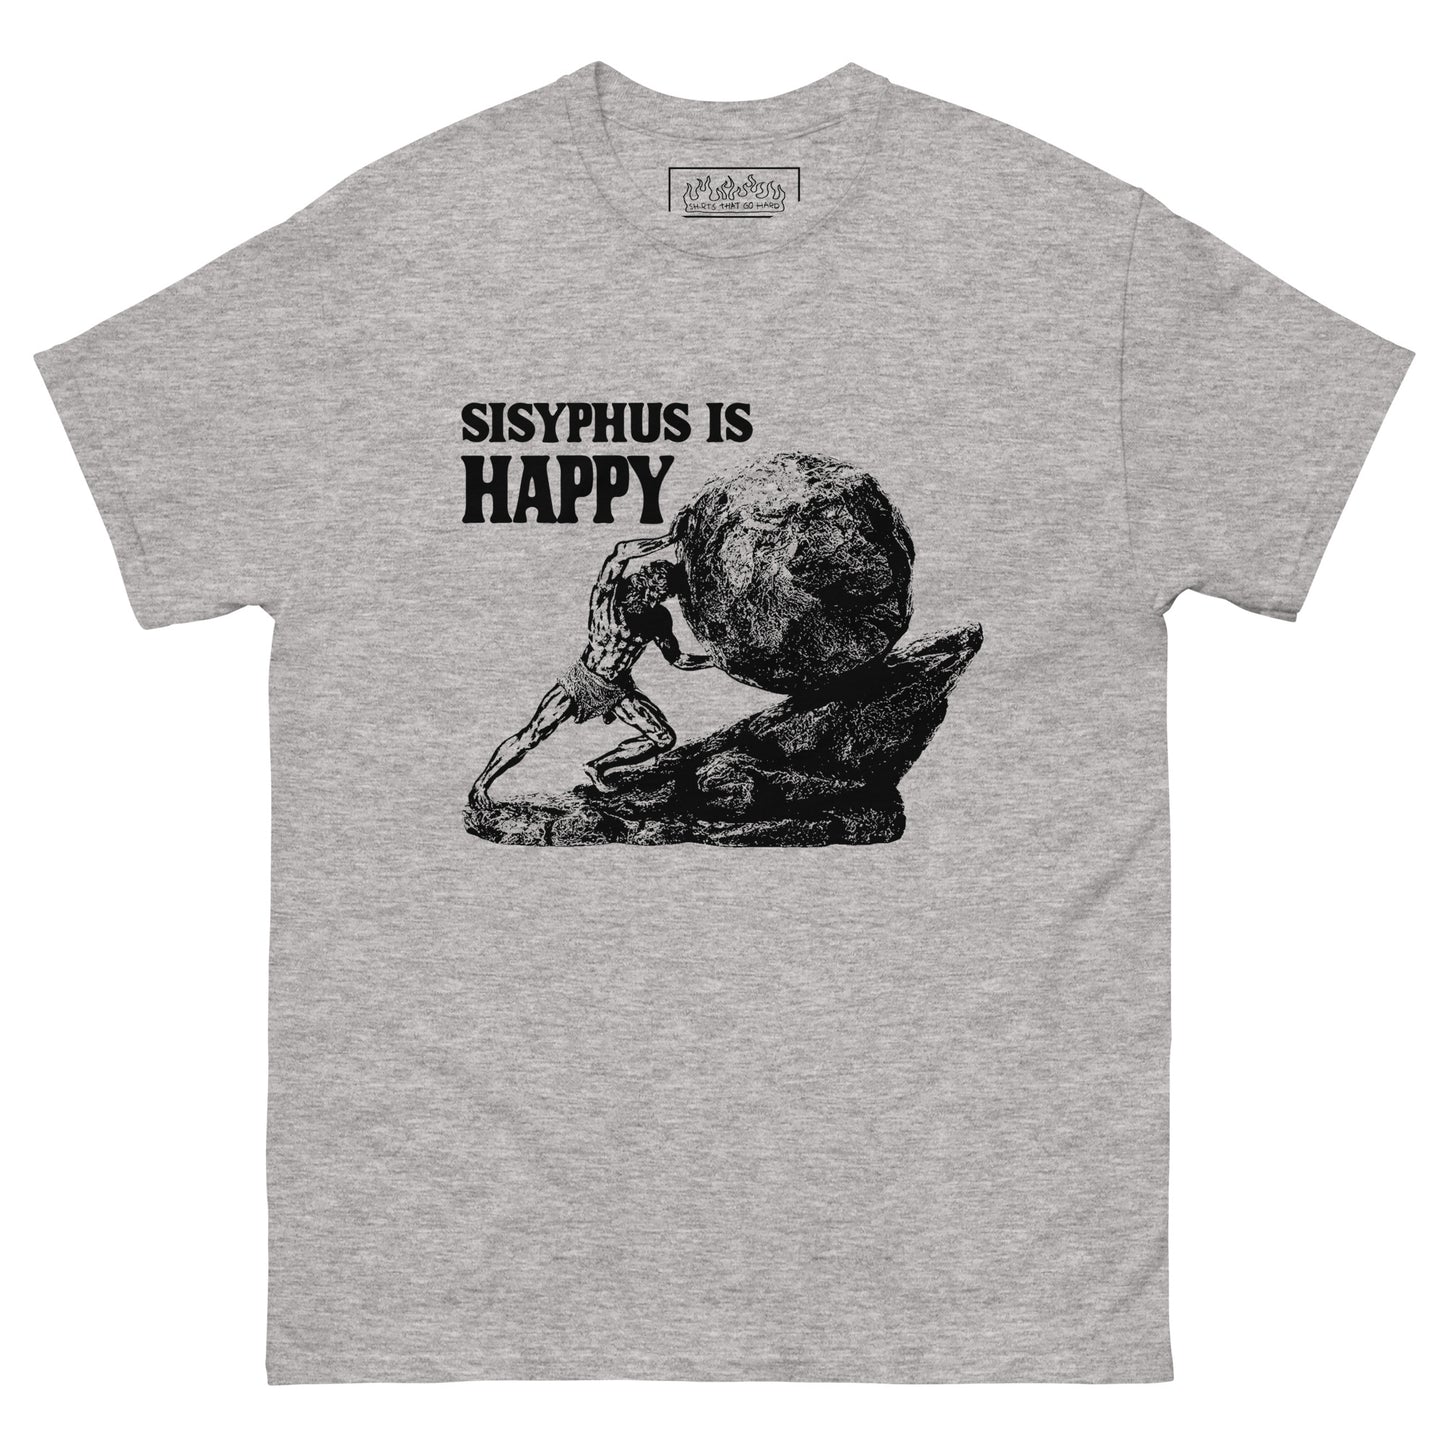 Sisyphus Is Happy.